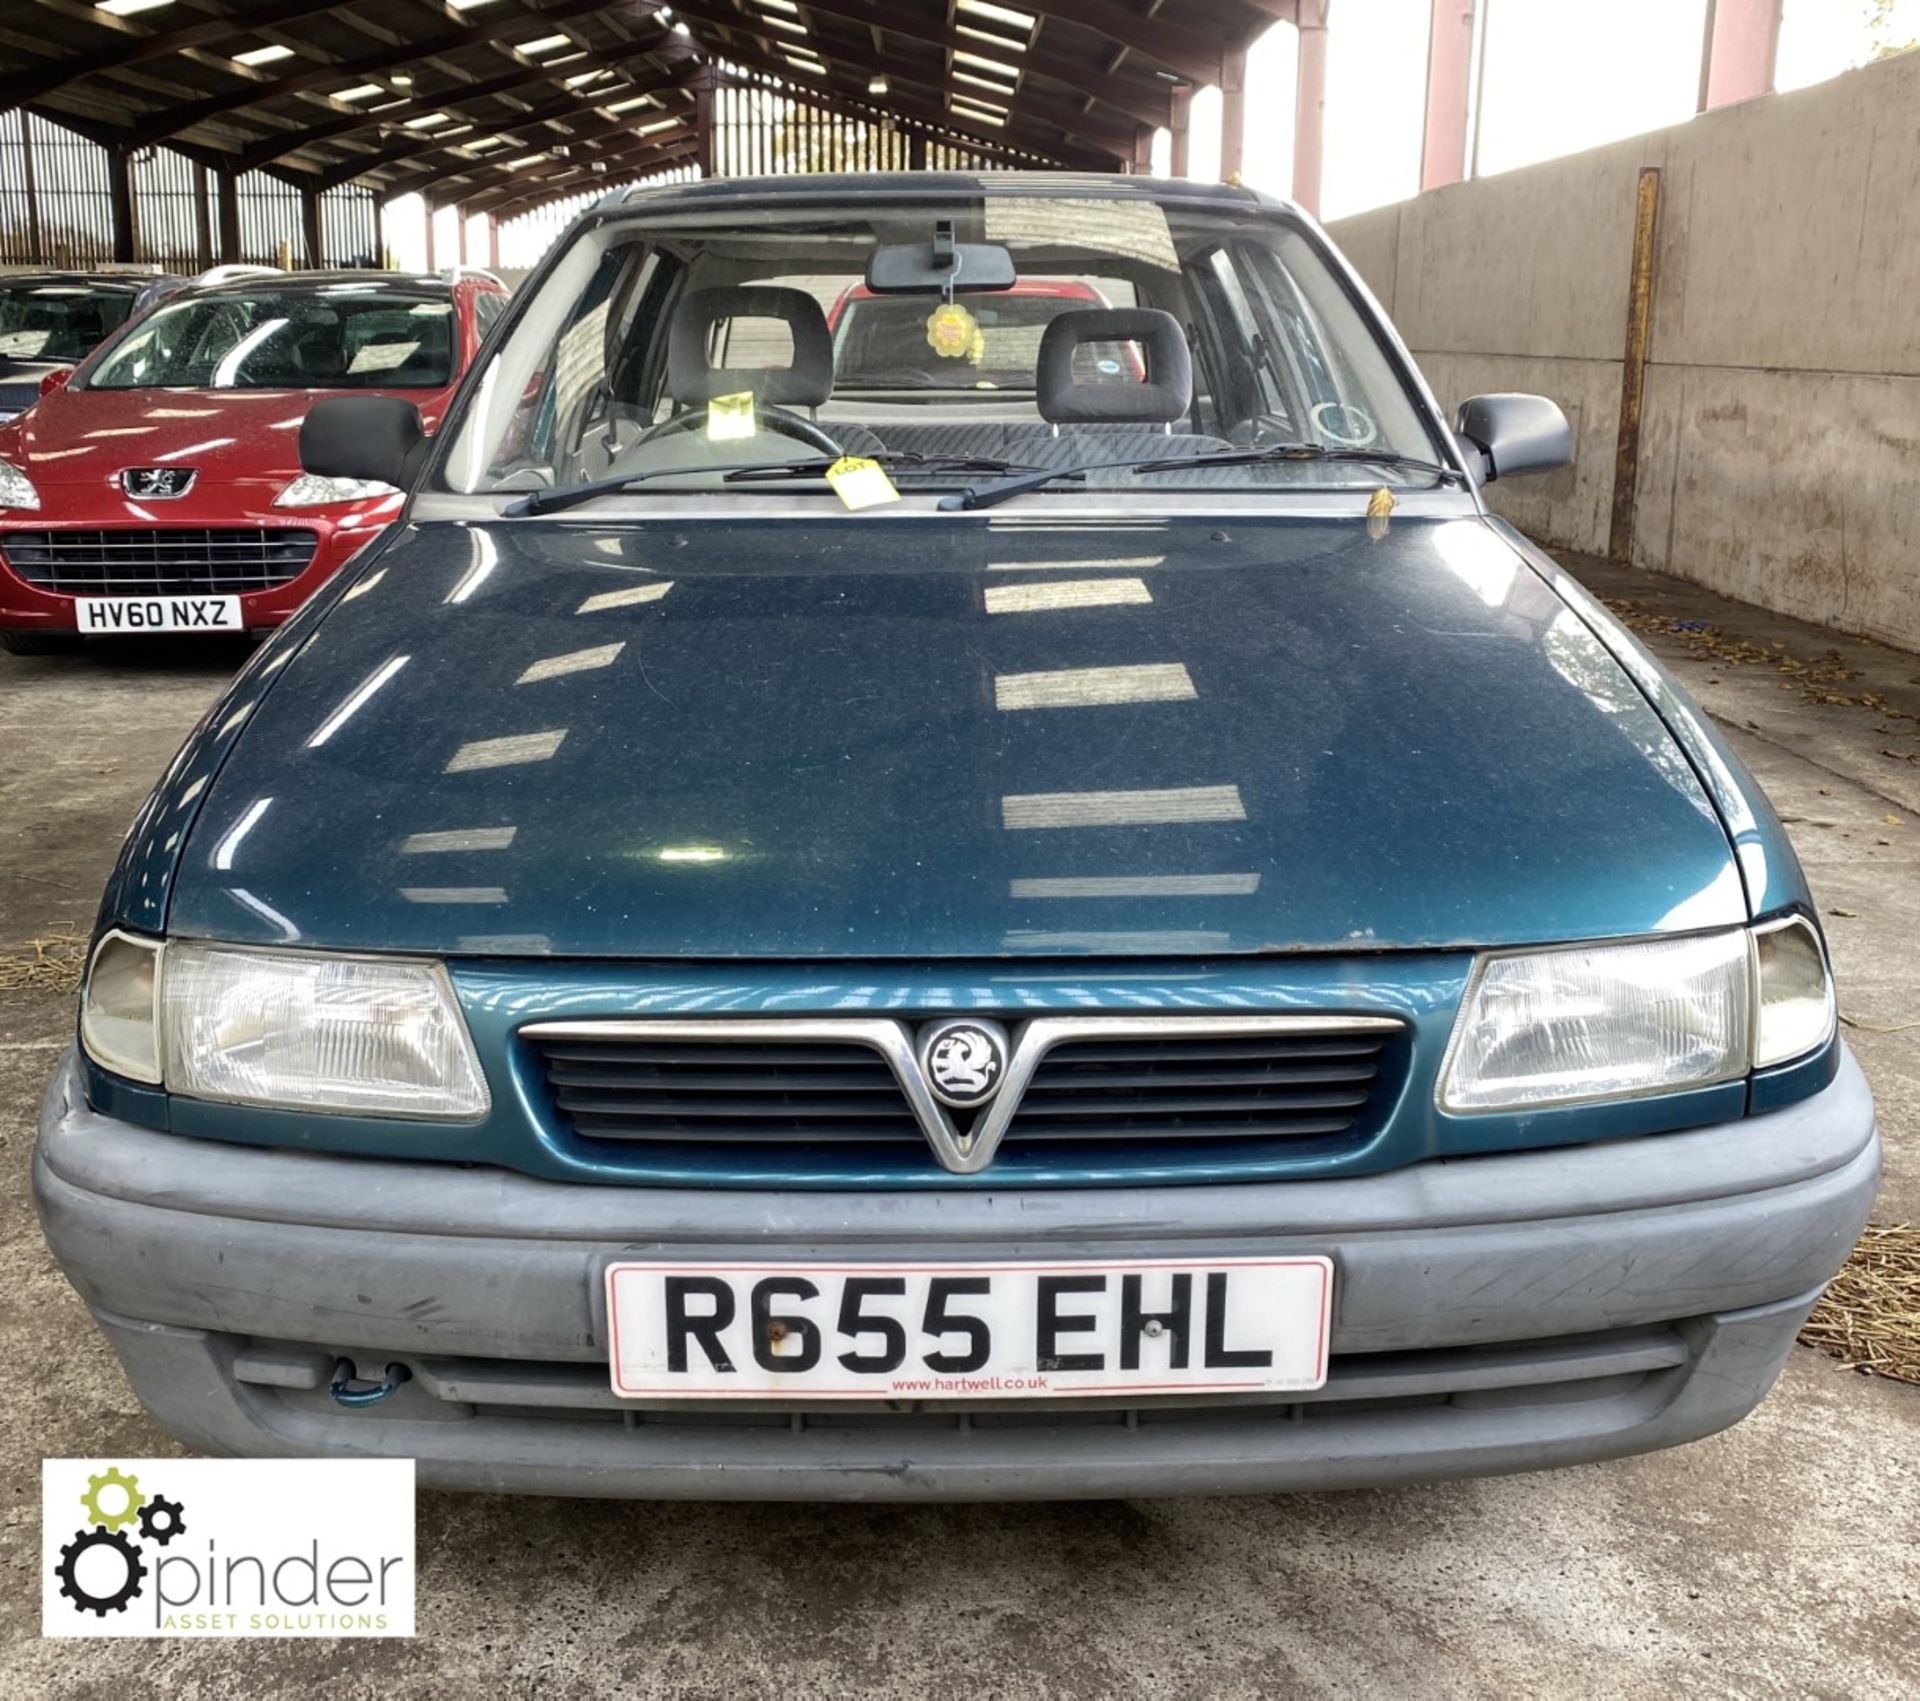 Vauxhall Astra Merit 1.6 petrol 5-door Hatchback, registration: R655 EHL, date of registration: 26 - Image 2 of 11